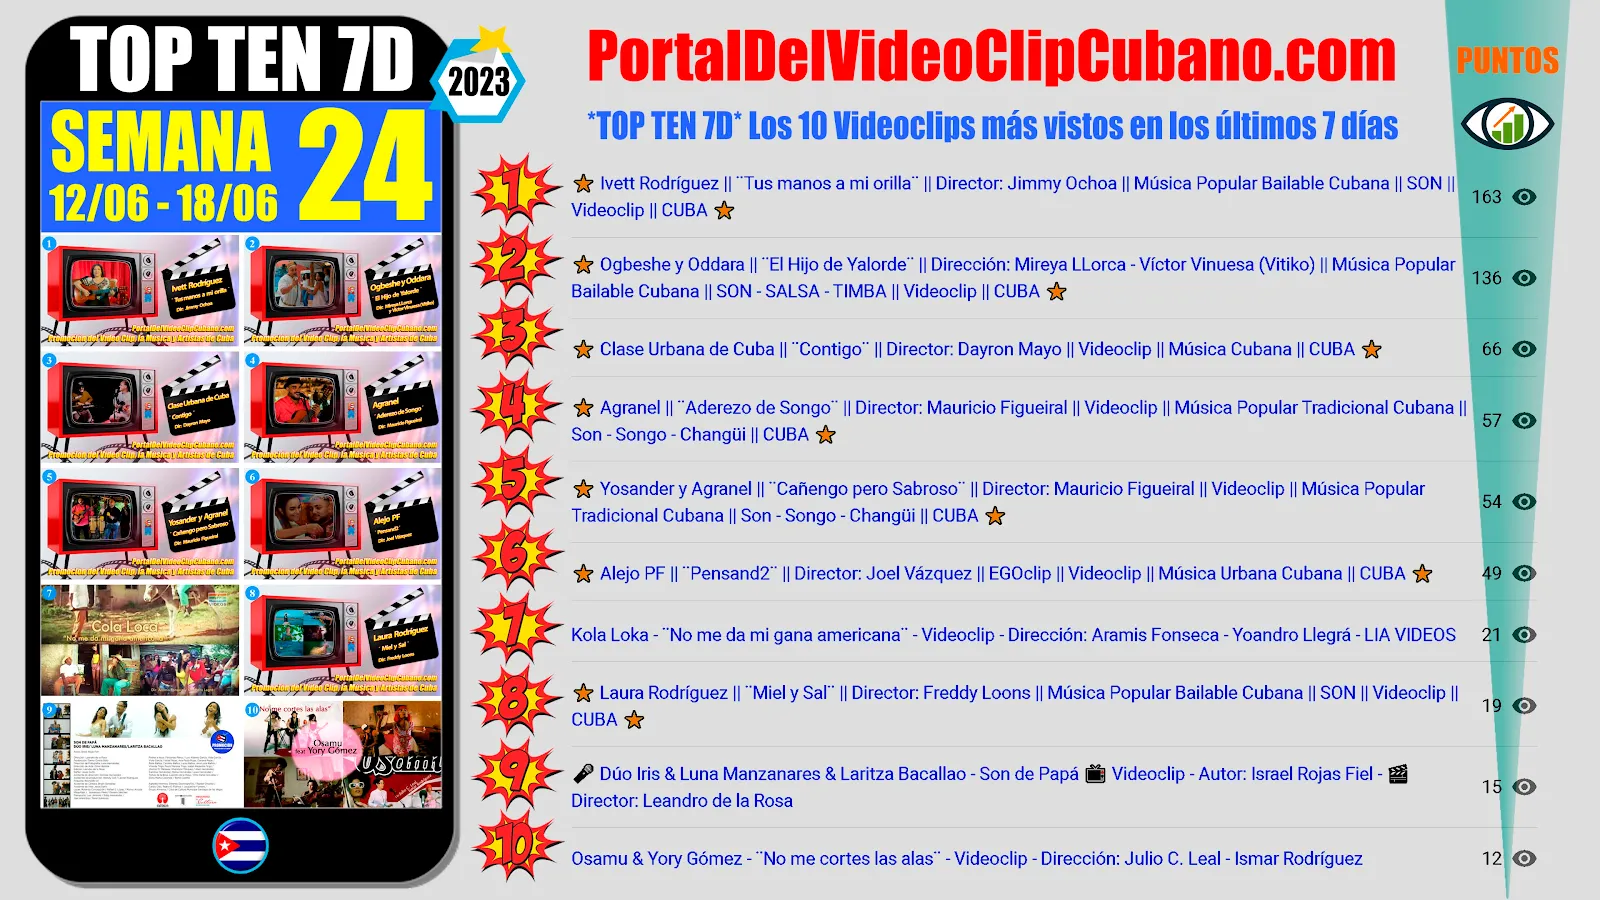 Artistas ganadores del * TOP TEN 7D * con los 10 Videoclips más vistos en la semana 24 (12/06 a 18/06 de 2023) en el Portal Del Vídeo Clip Cubano